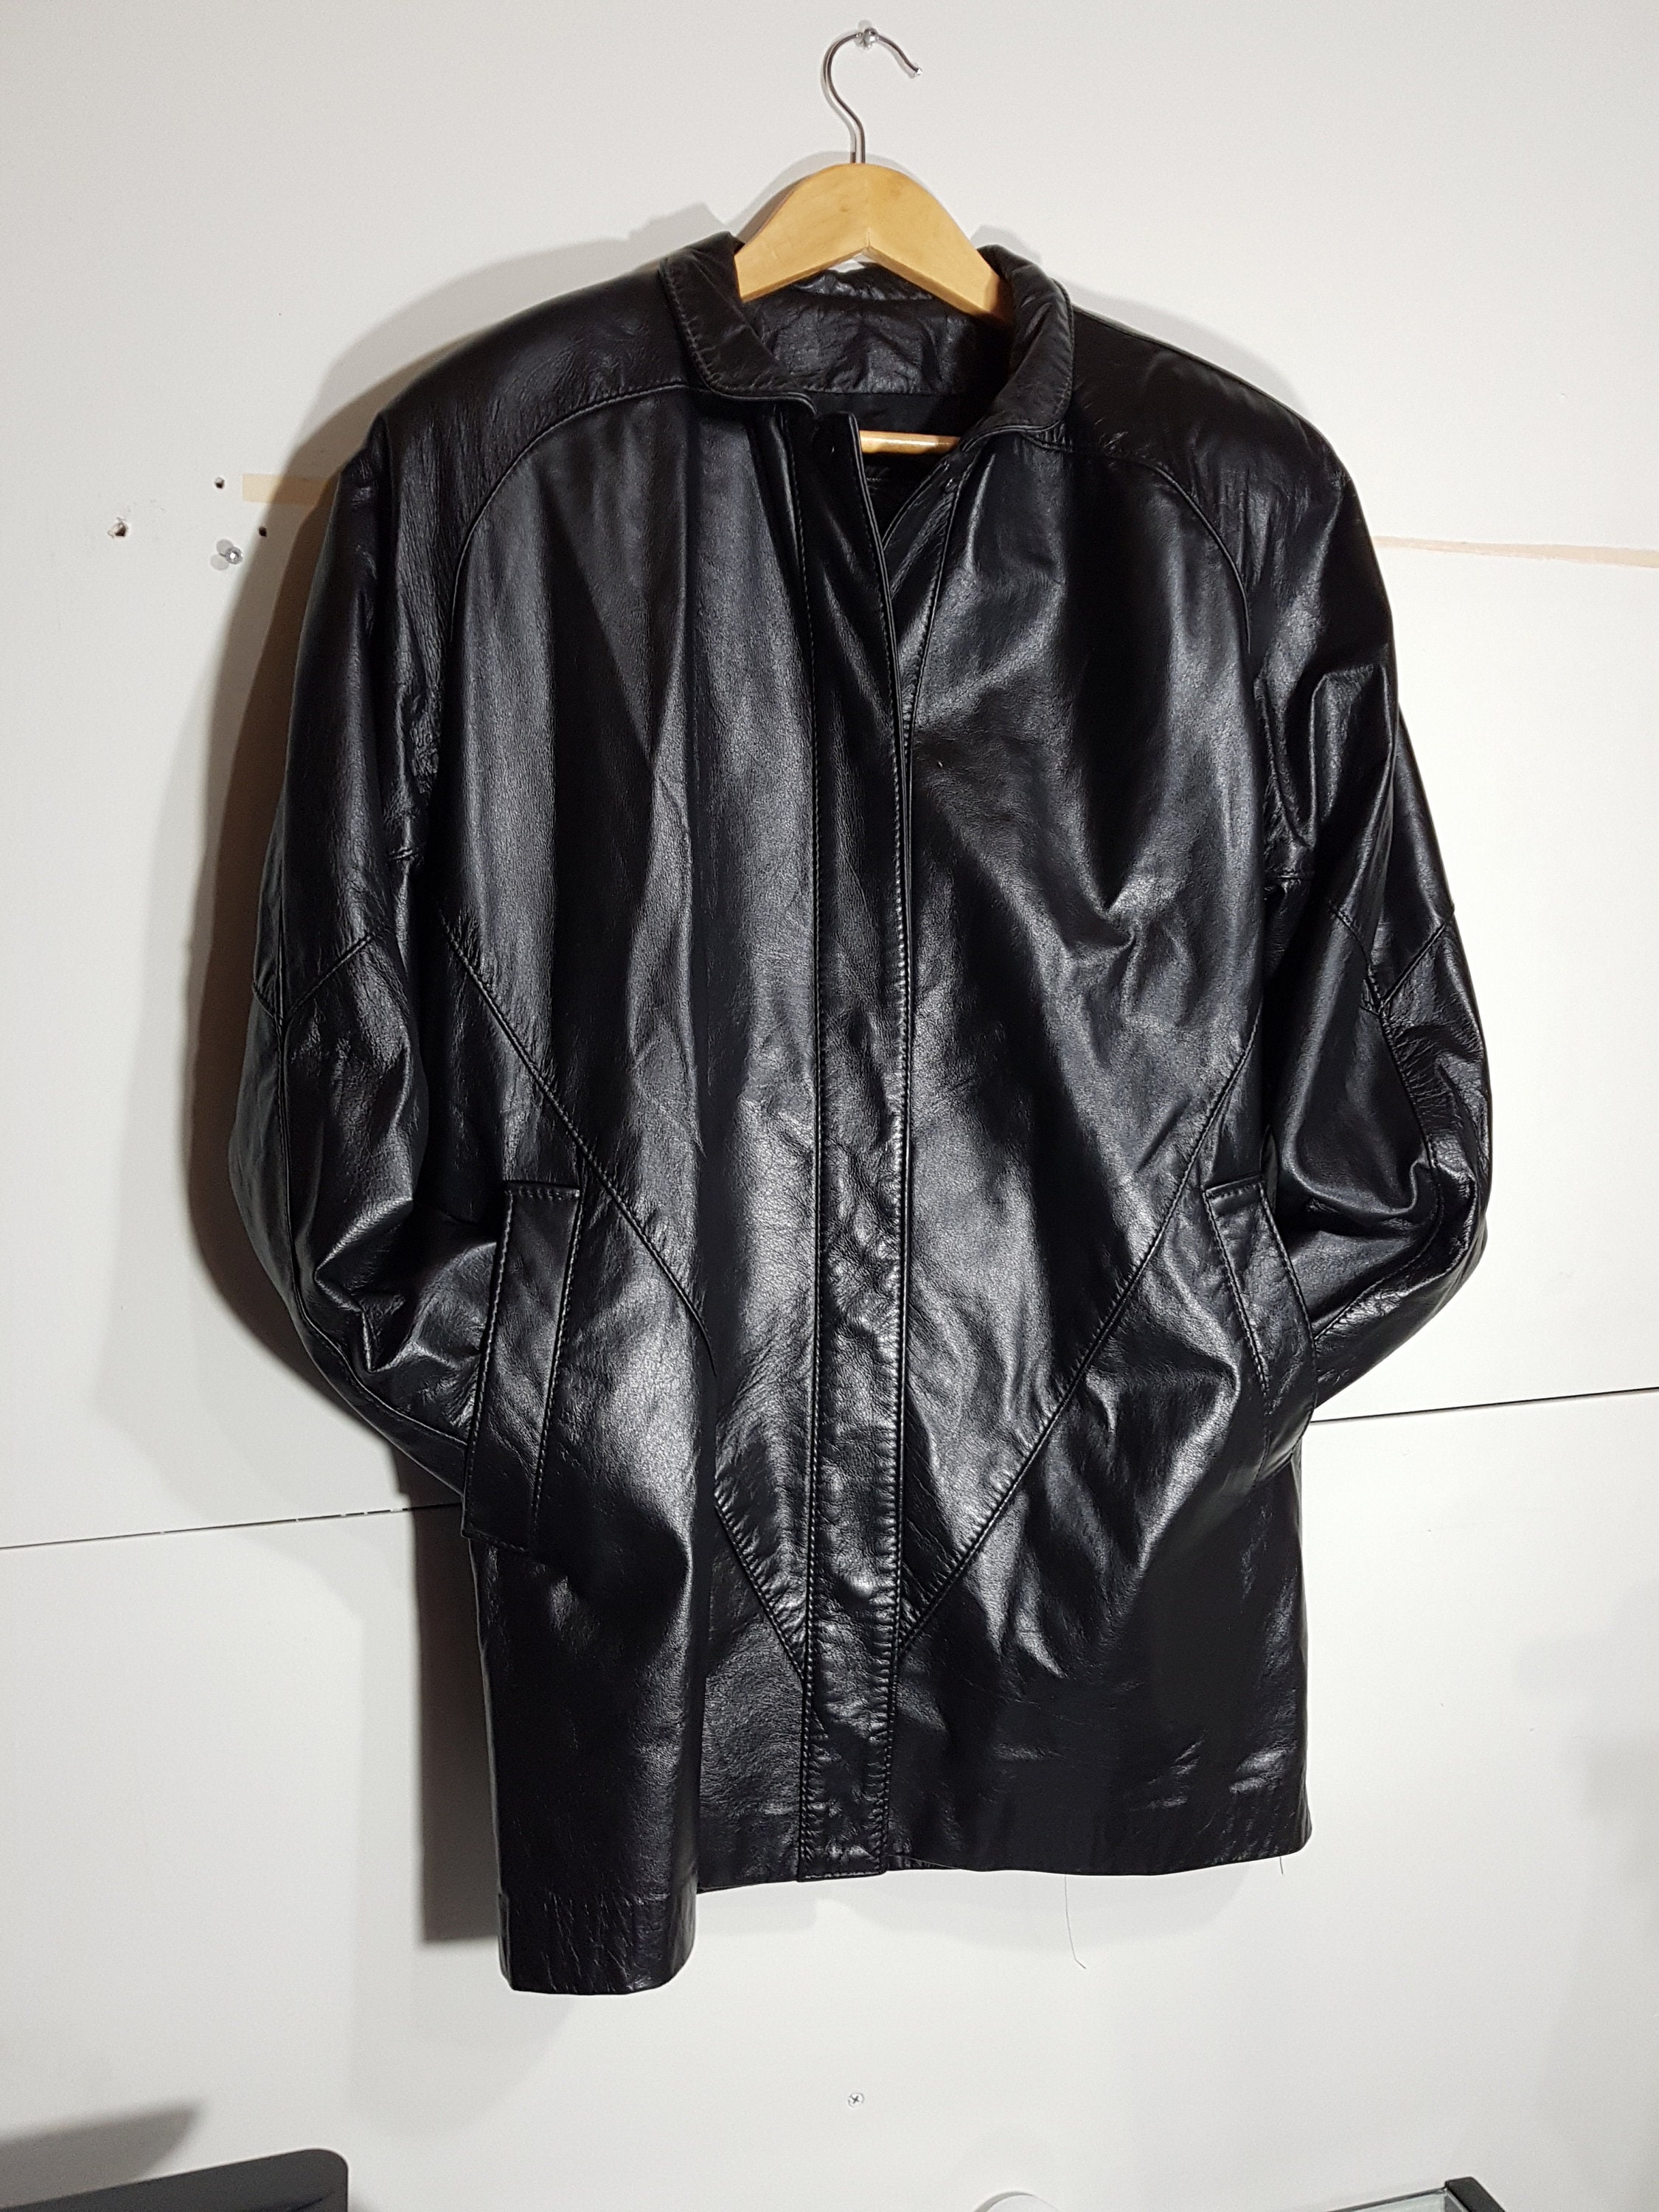 Kleding Dameskleding Jacks & Jassen Jaren 90 'Leather Ranch' Zwart Lederen Fringe Jacket Small 